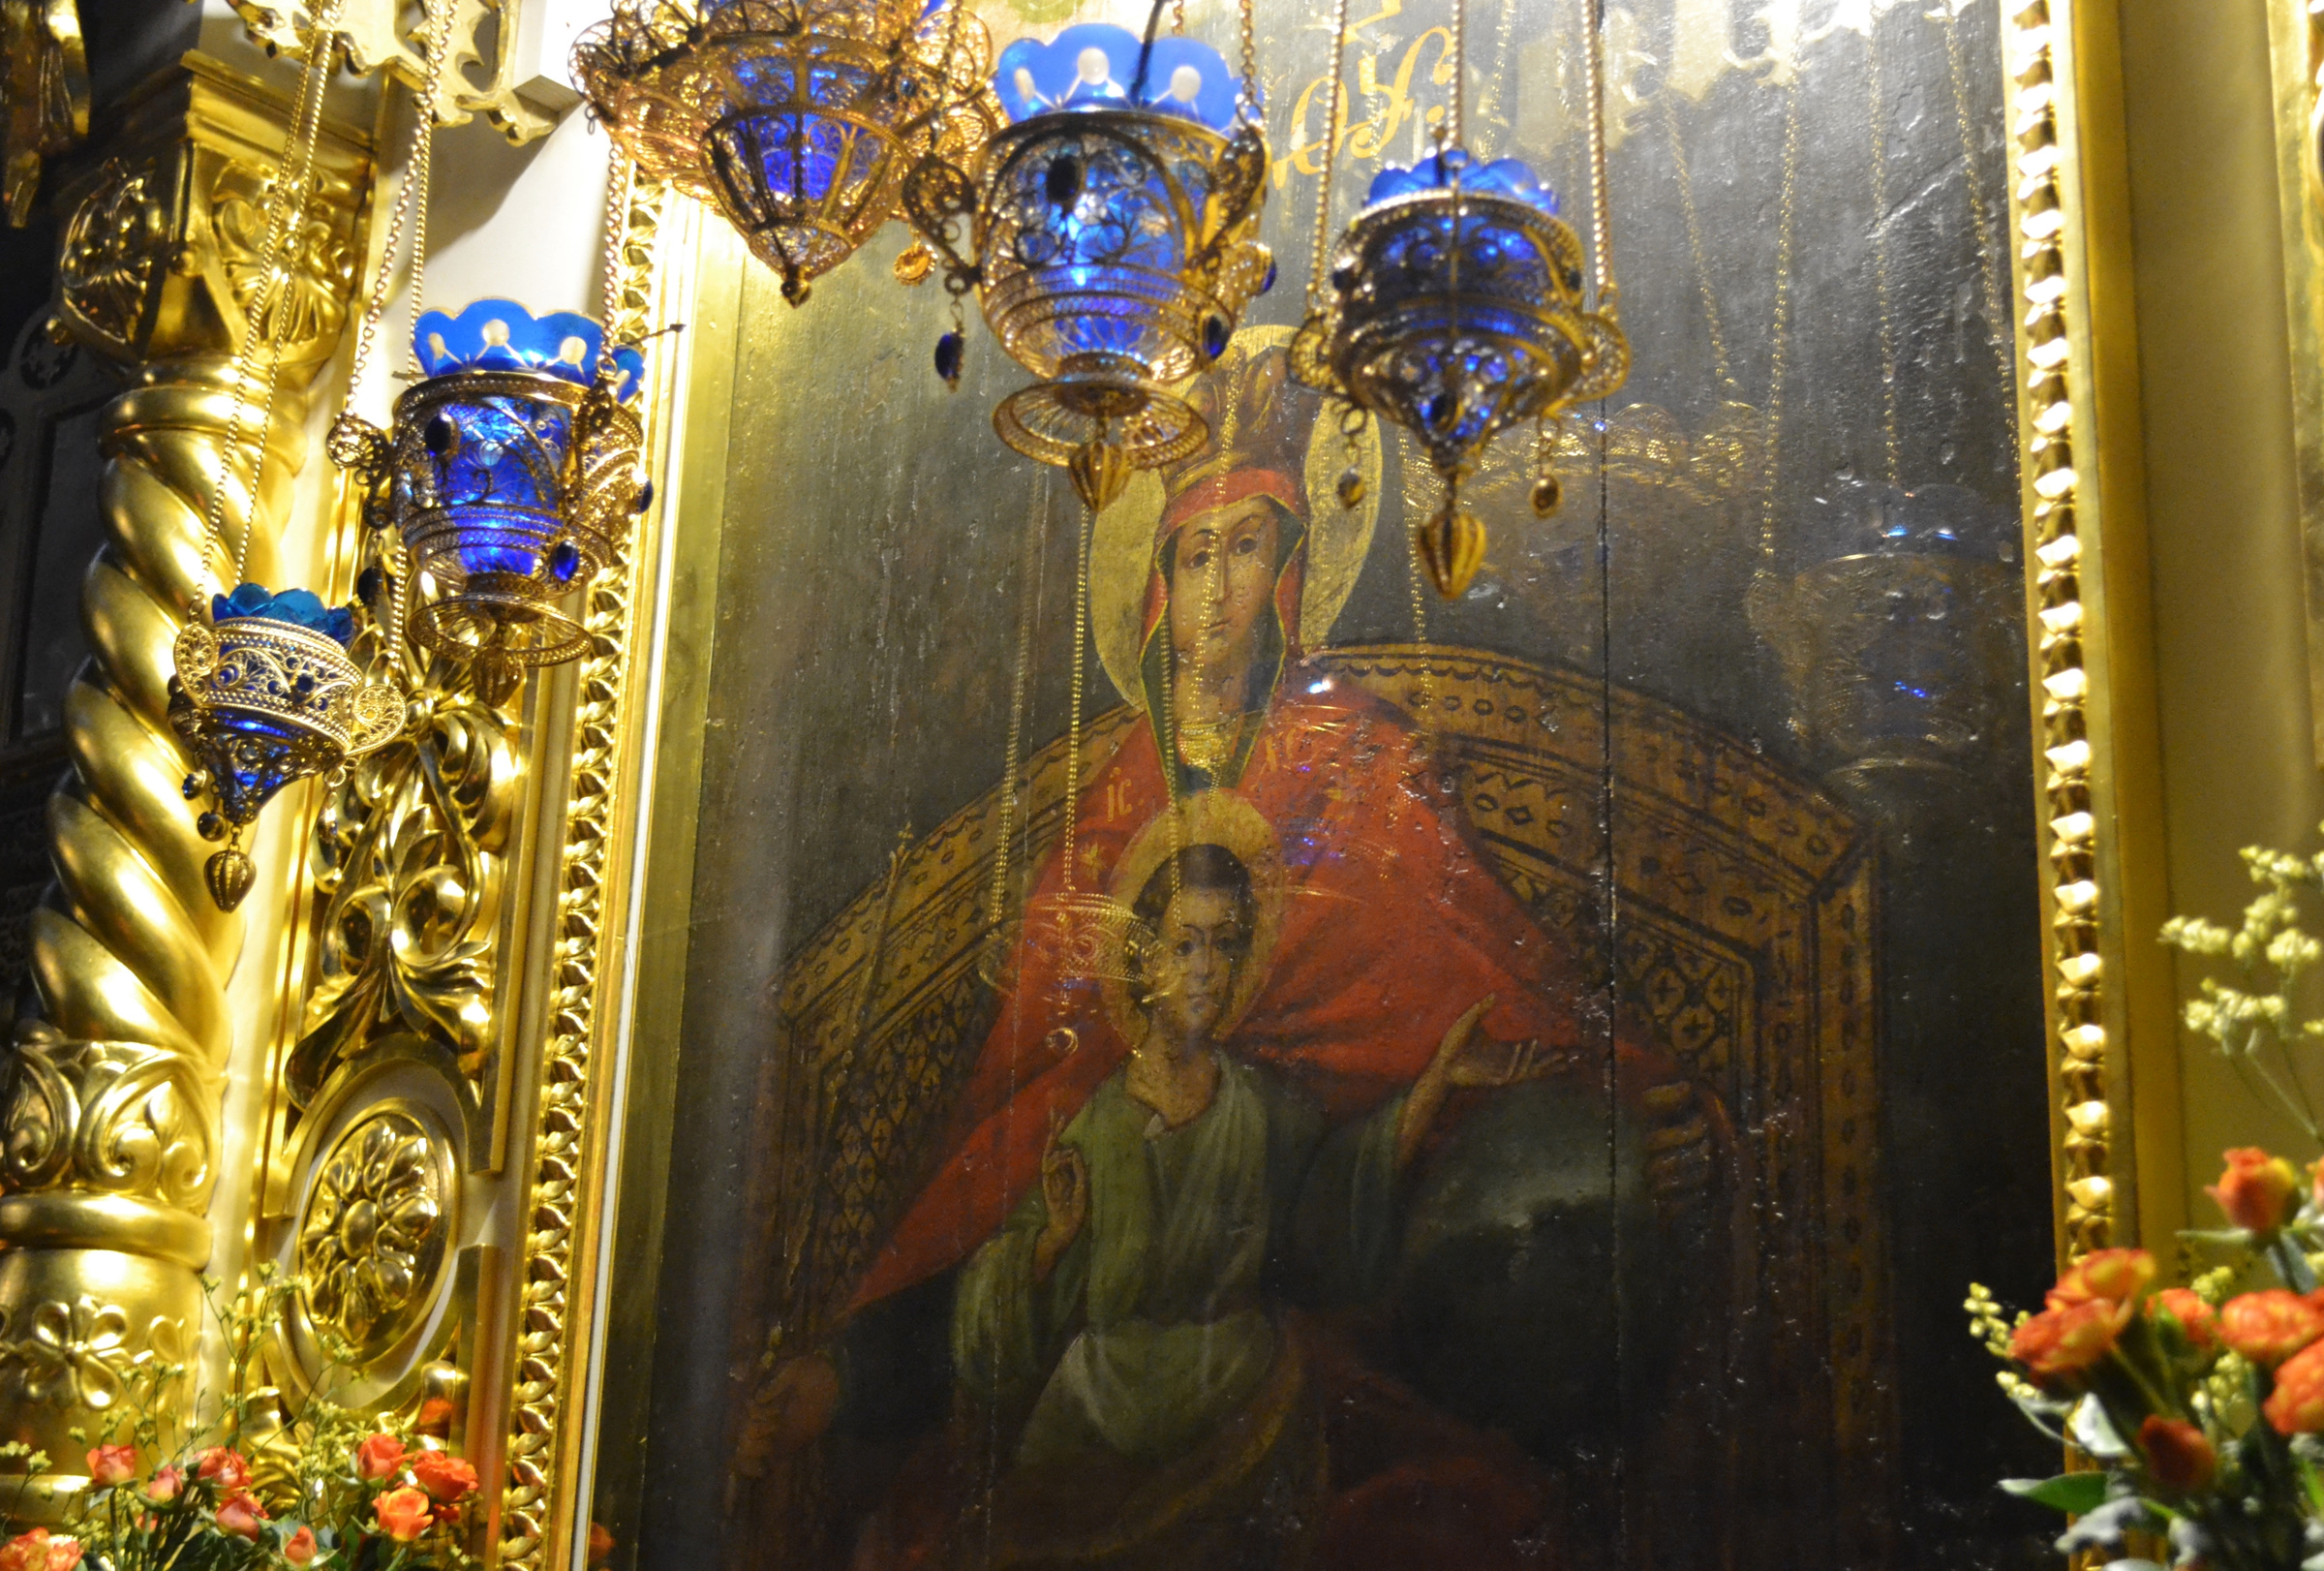 Оригинал Державной иконы Божией Матери находится в Казанском храме Коломенского. Фото © ТАСС / Ирина Дмитриева